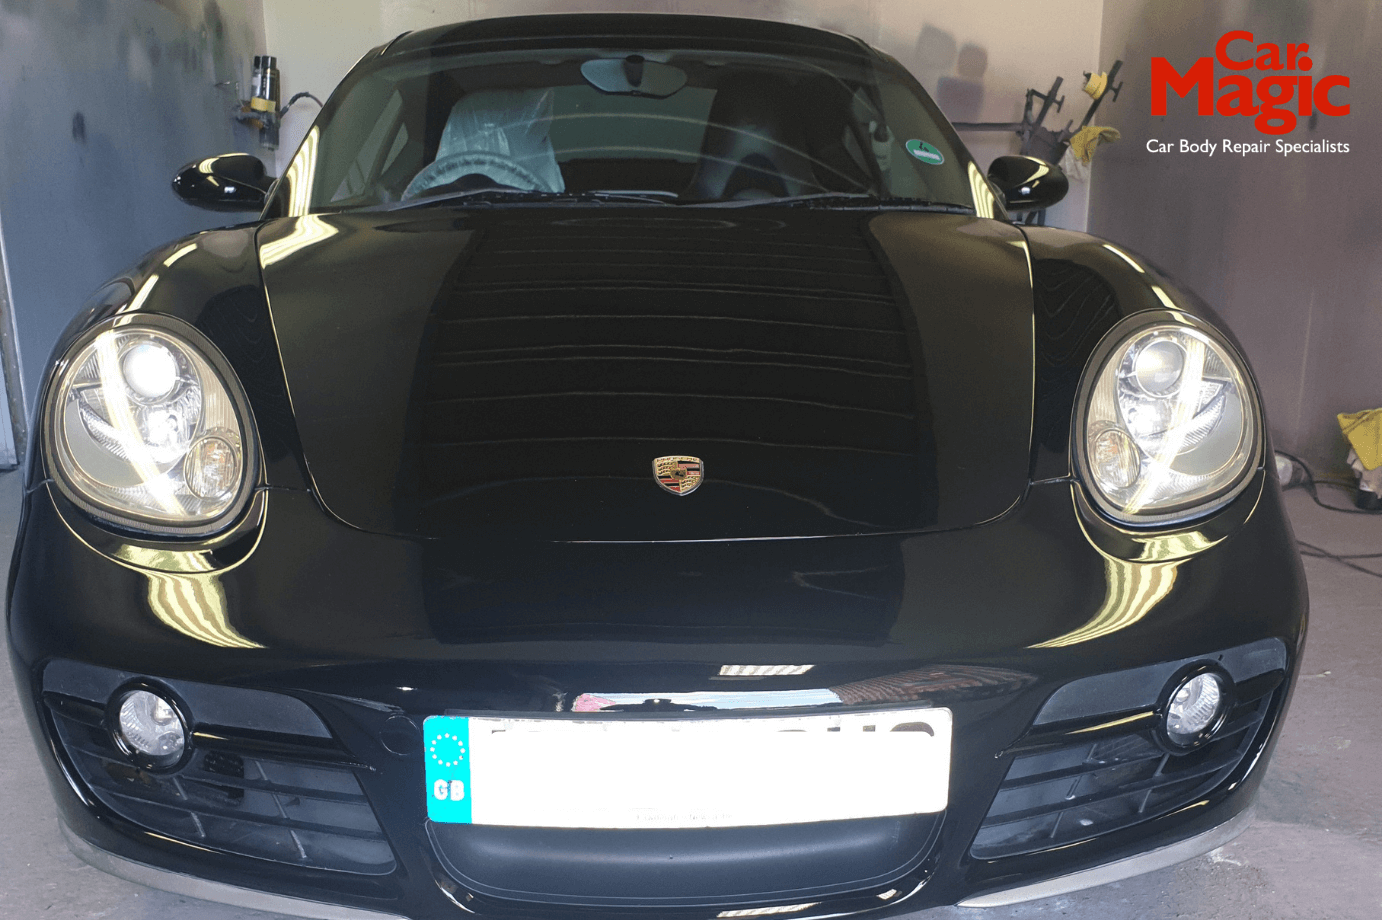 Porsche Repairs Front